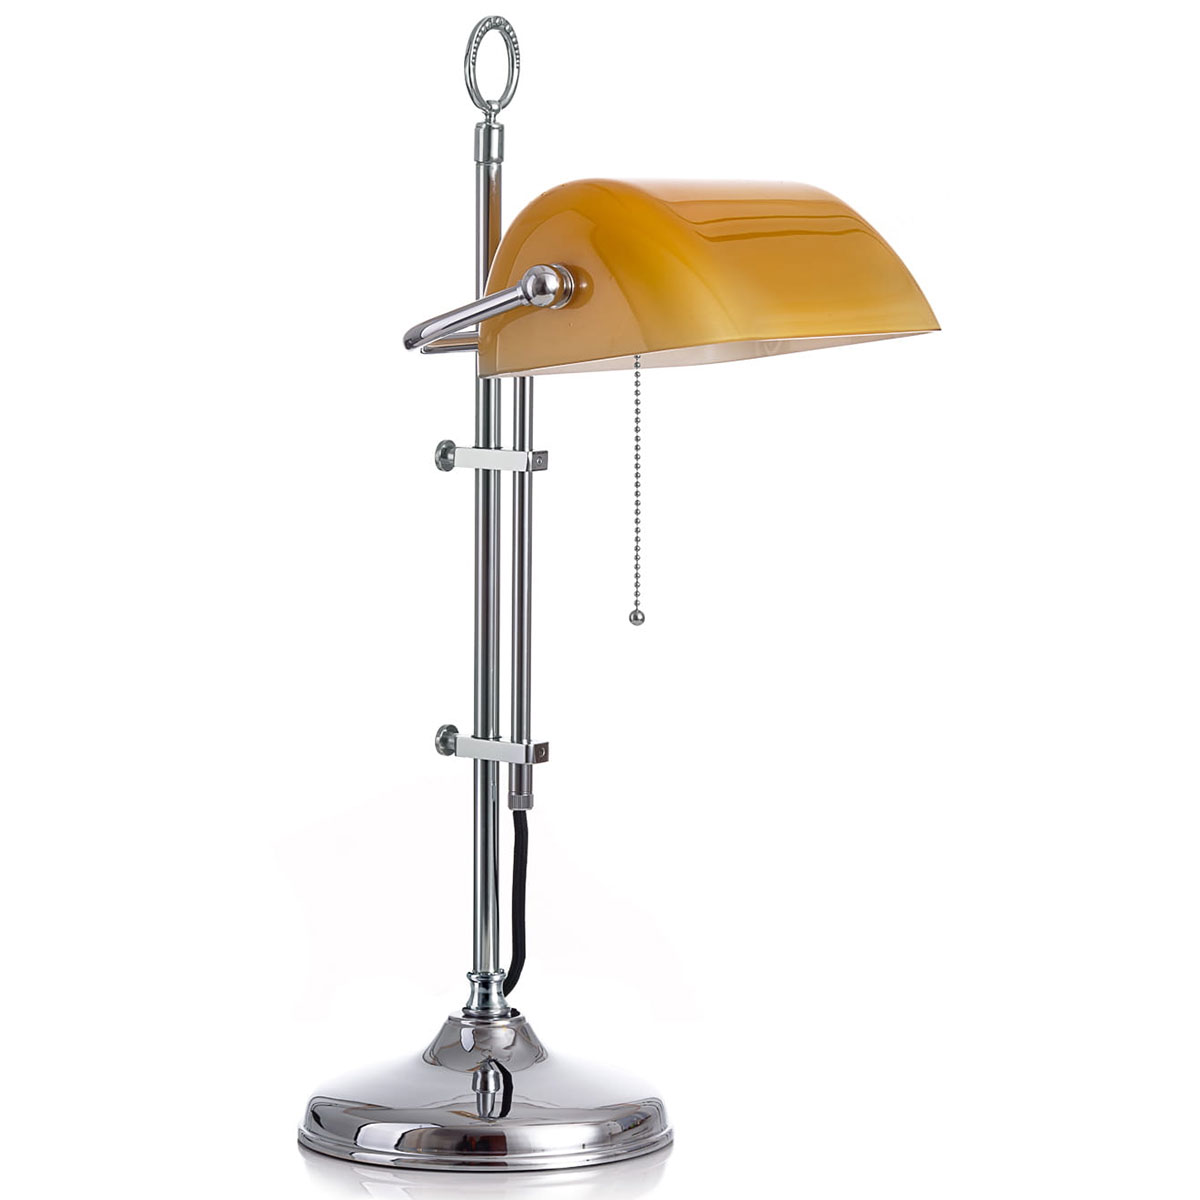 Klassische Schreibtischlampe: Bankerlampe mit rundem Sockel: Verchromtes, glattes Gestänge mit cognacfarbenem Glasschirm